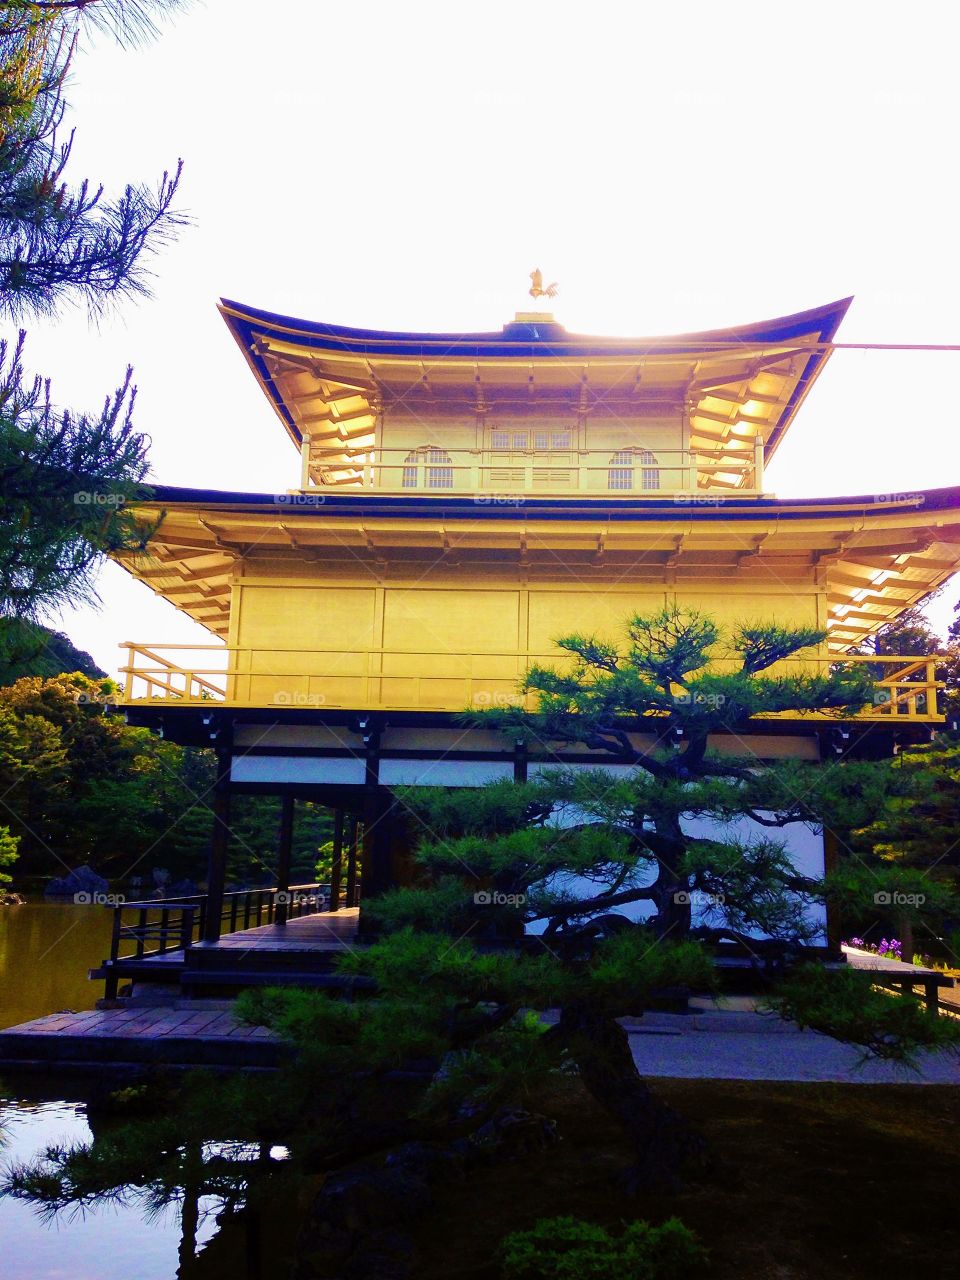 O famoso e incrível kinkakuji um pequeno castelo folhado a ouro em Kyoto Japão!